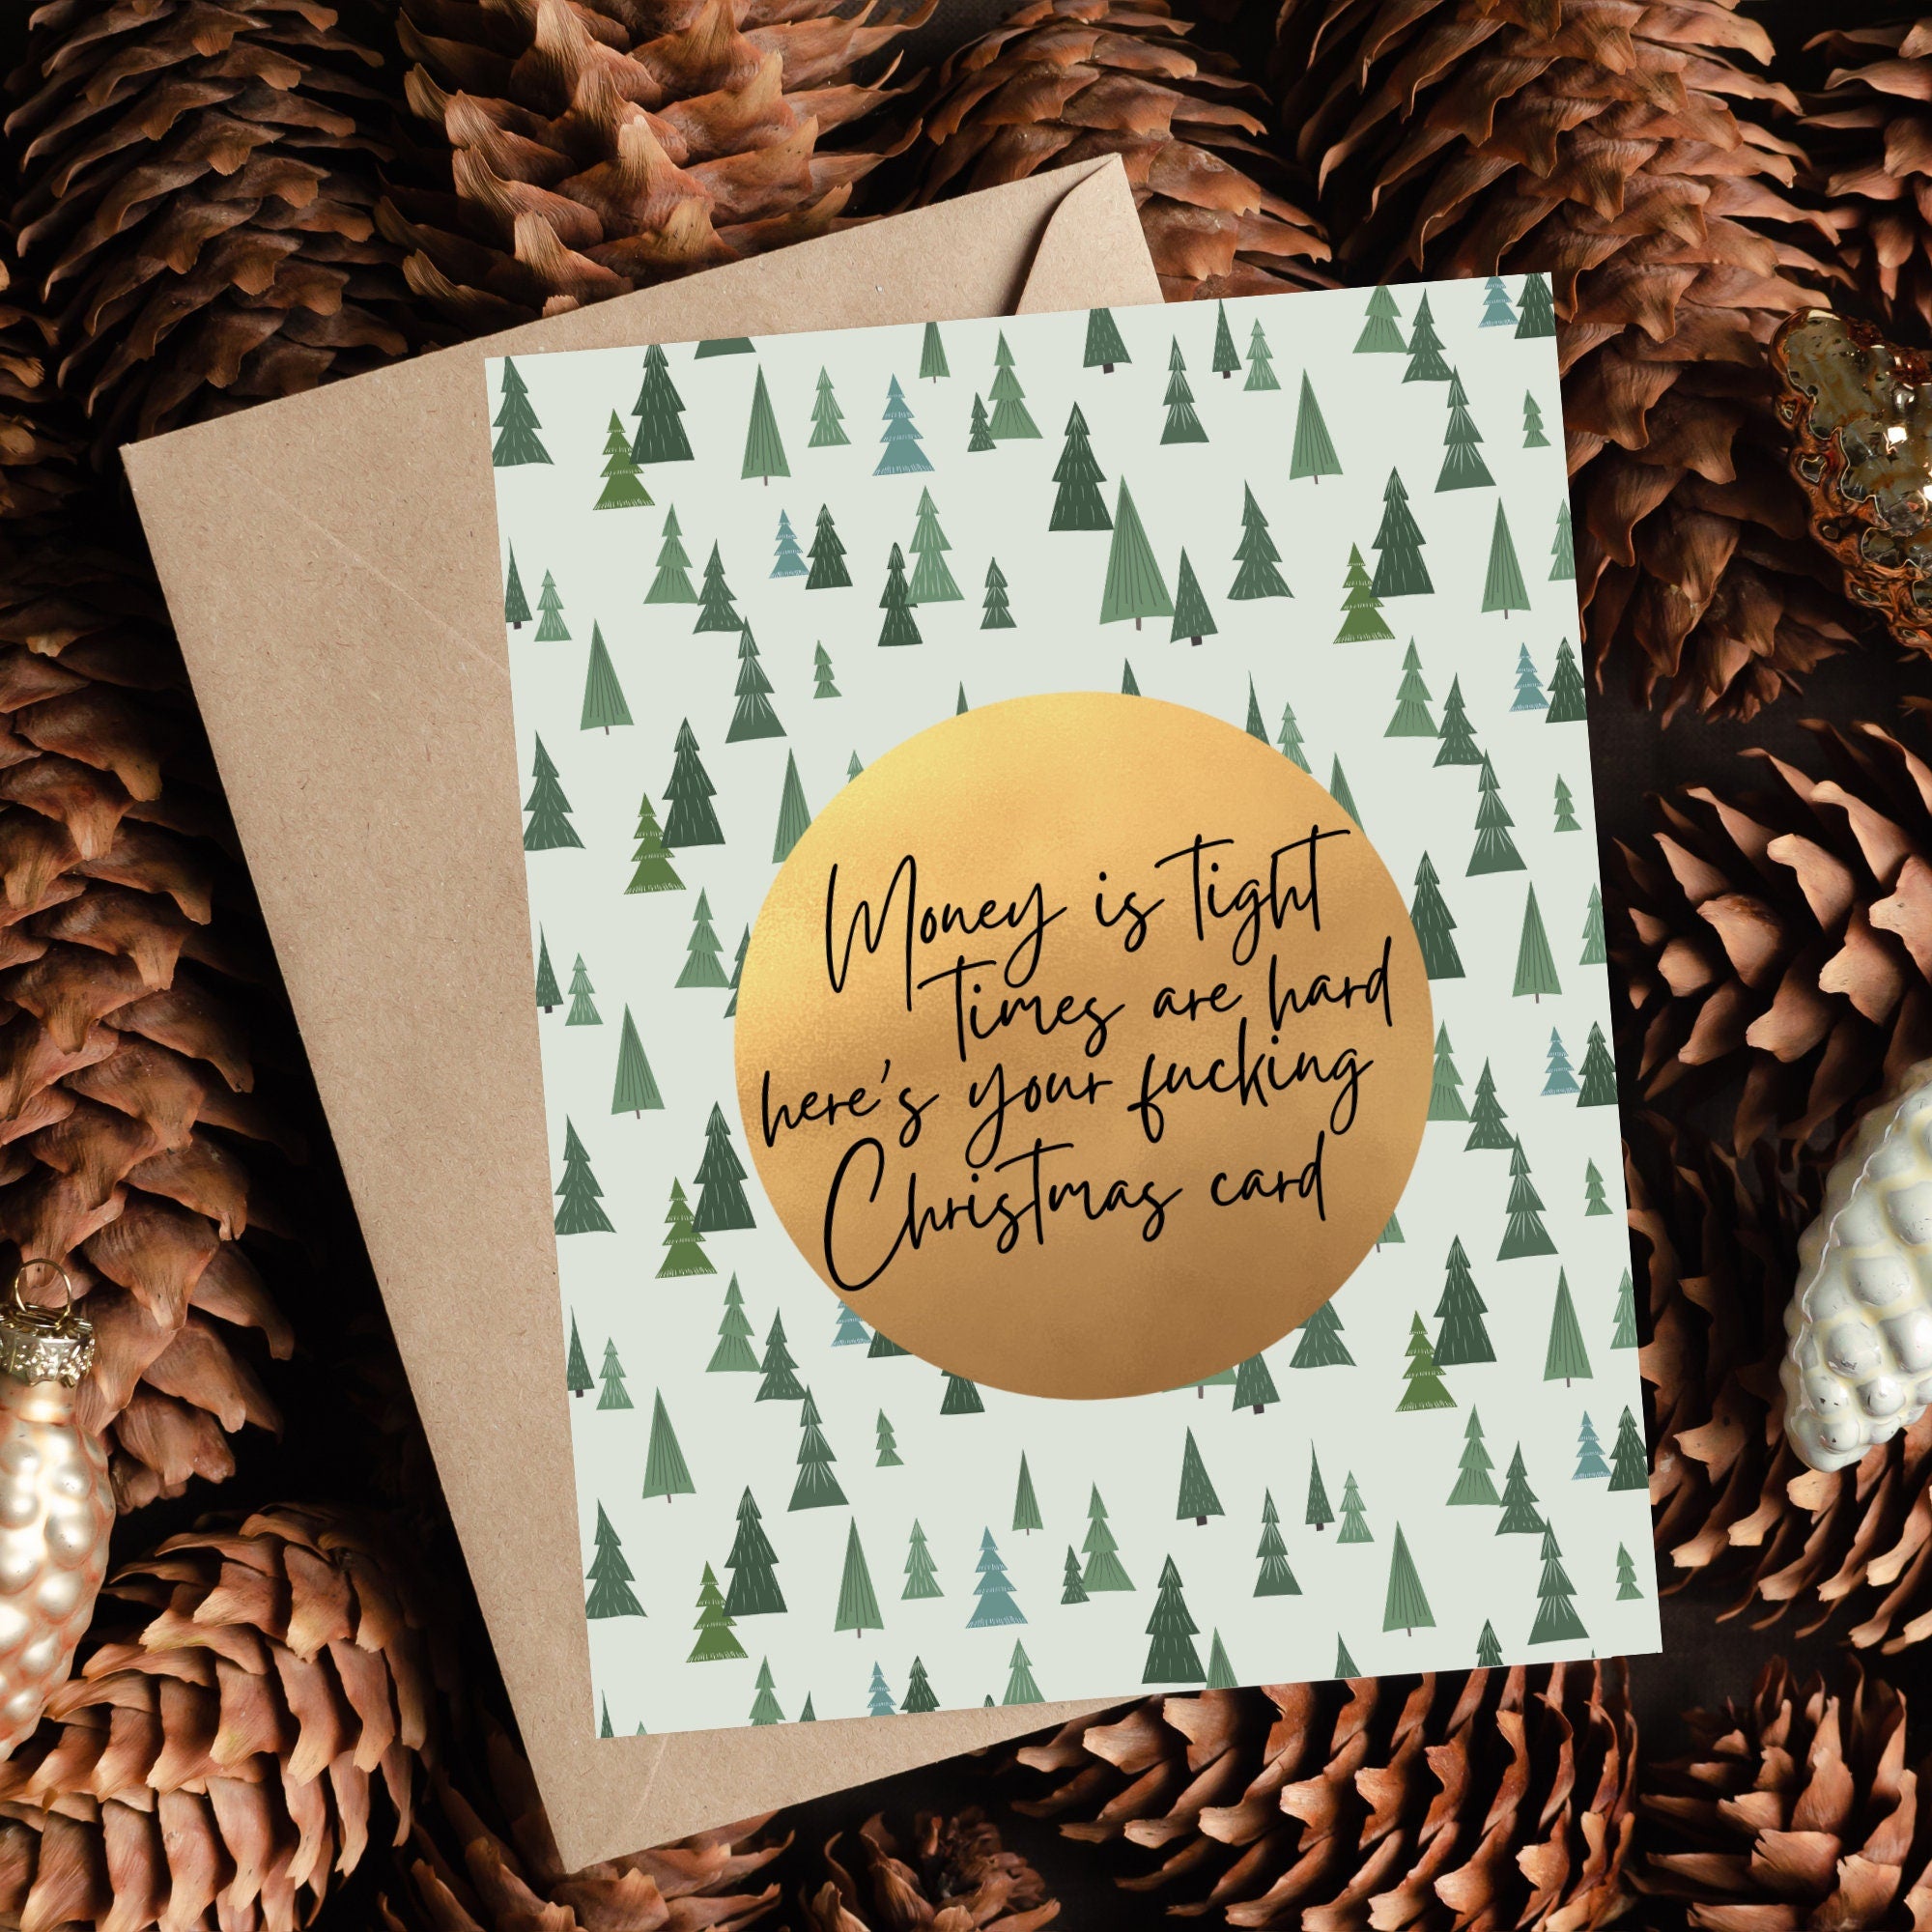 Hard Times Christmas Card | Broke Christmas Gift | Money is Tight Christmas Card